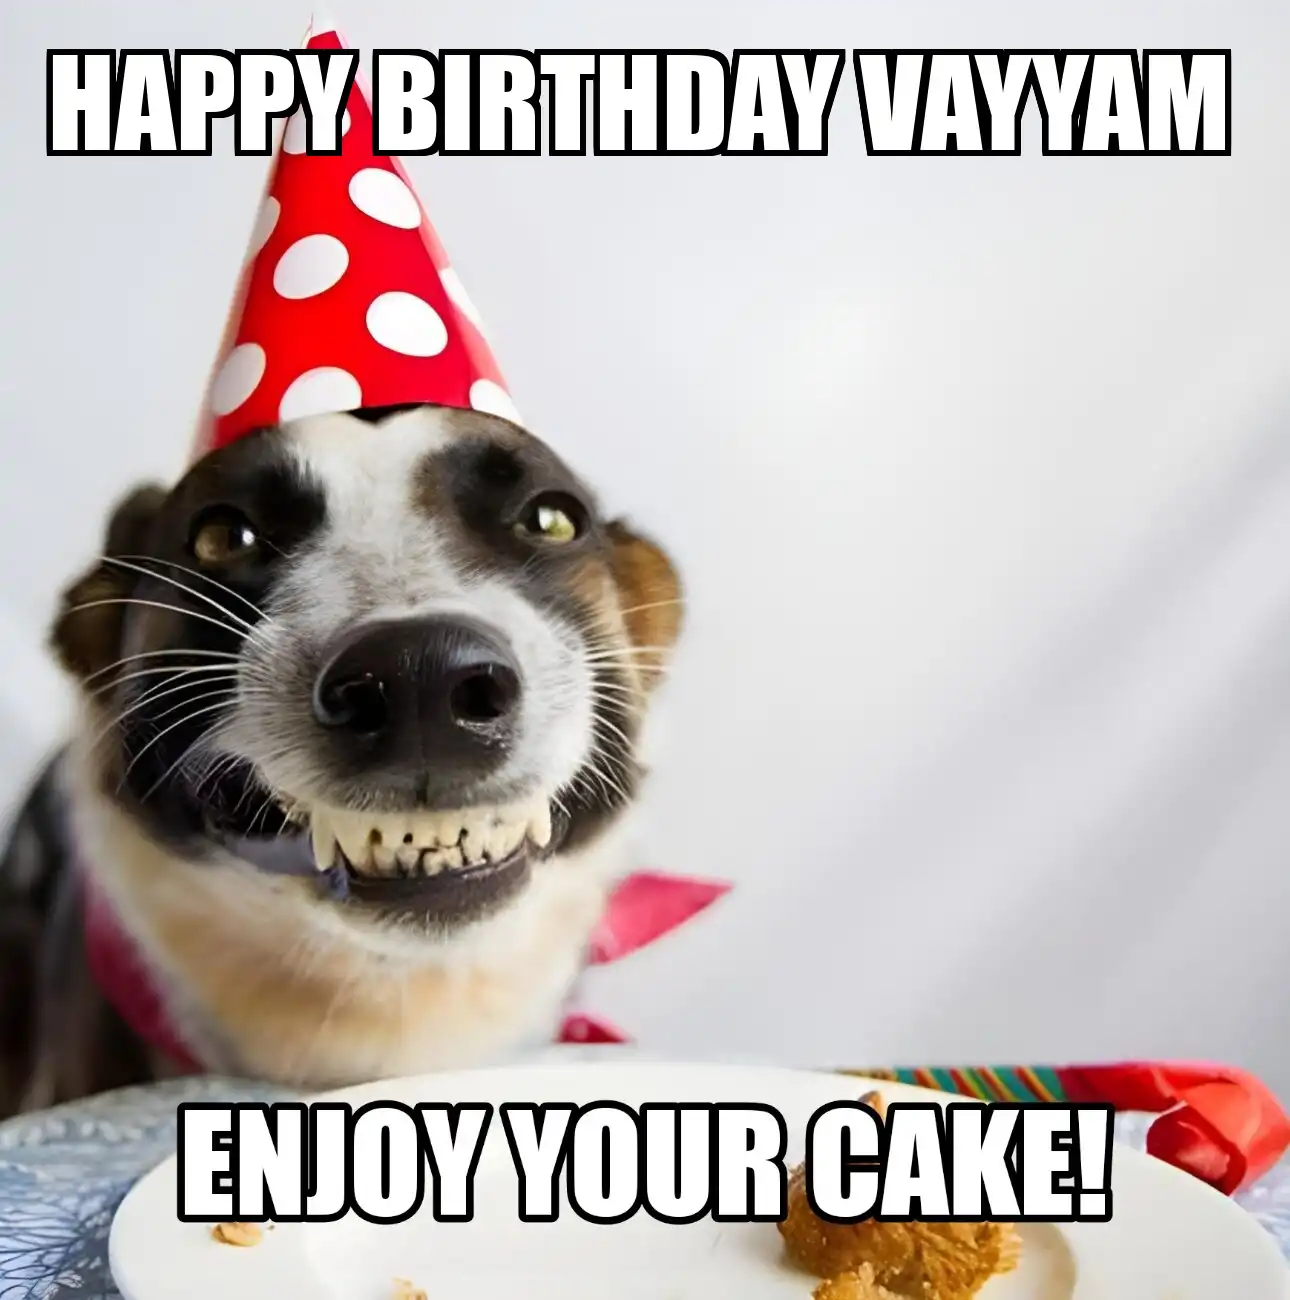 Happy Birthday Vayyam Enjoy Your Cake Dog Meme